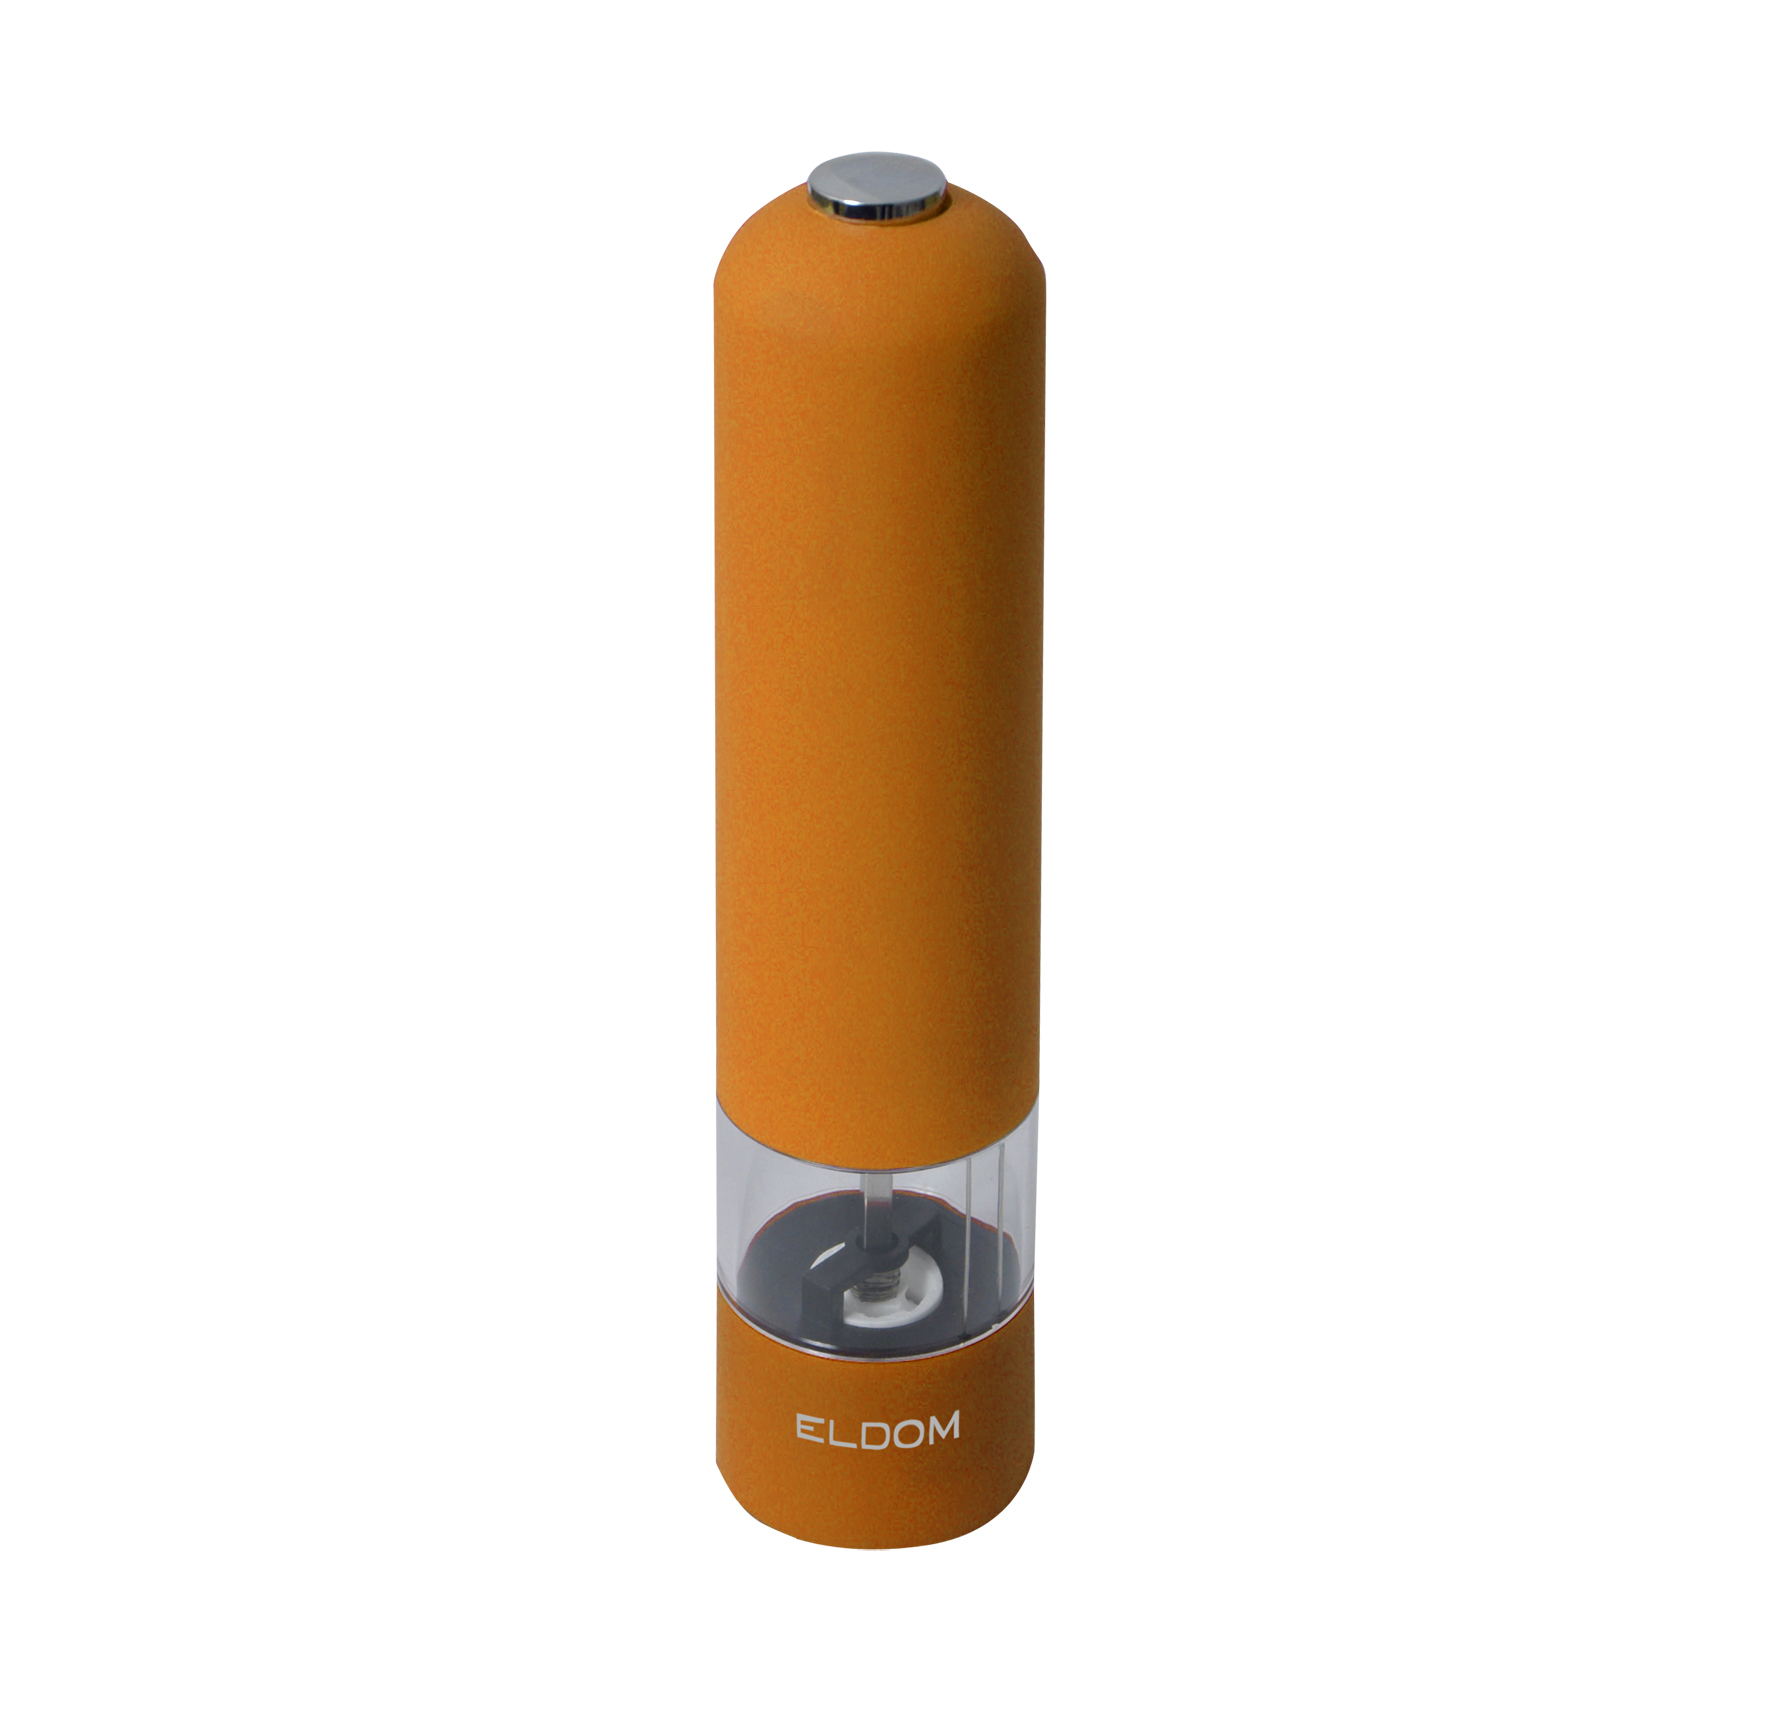 molinillo de pimienta o sal eldom MP8 naranja baterias R6